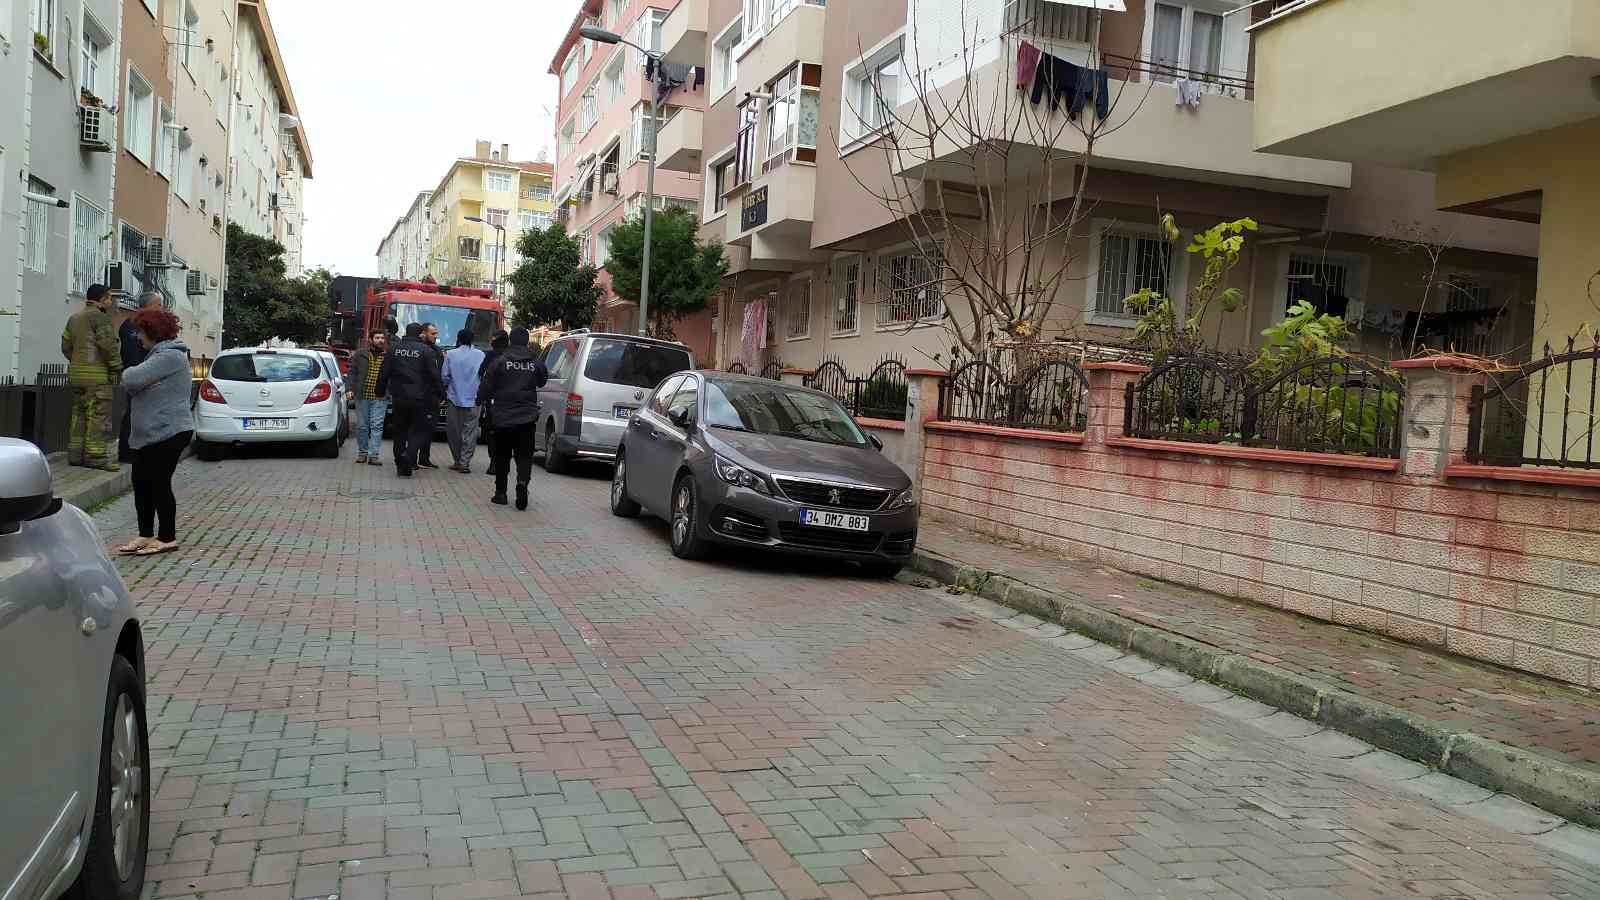 Güngören’de madde bağımlısı şahıs yaşadığı  daireyi ateşe verdi #istanbul